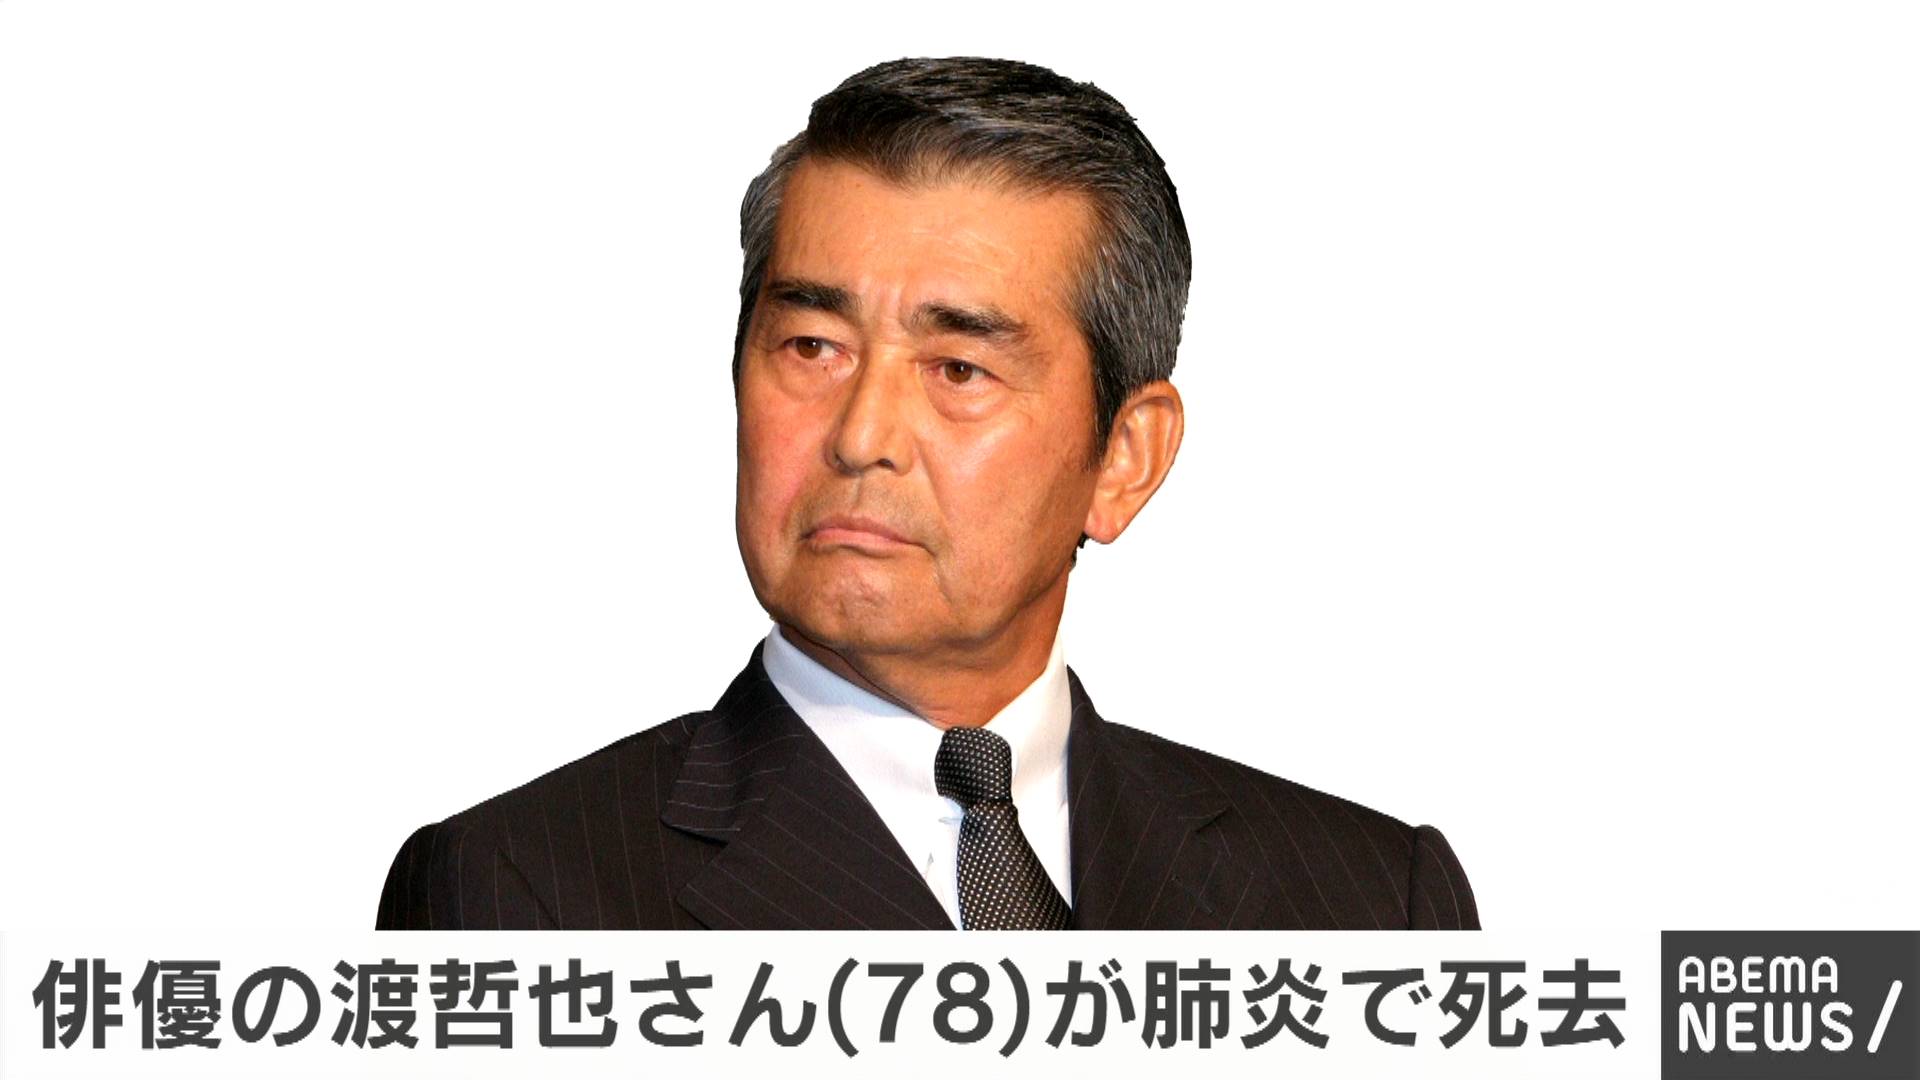 俳優の渡哲也さんが肺炎のため死去 78歳